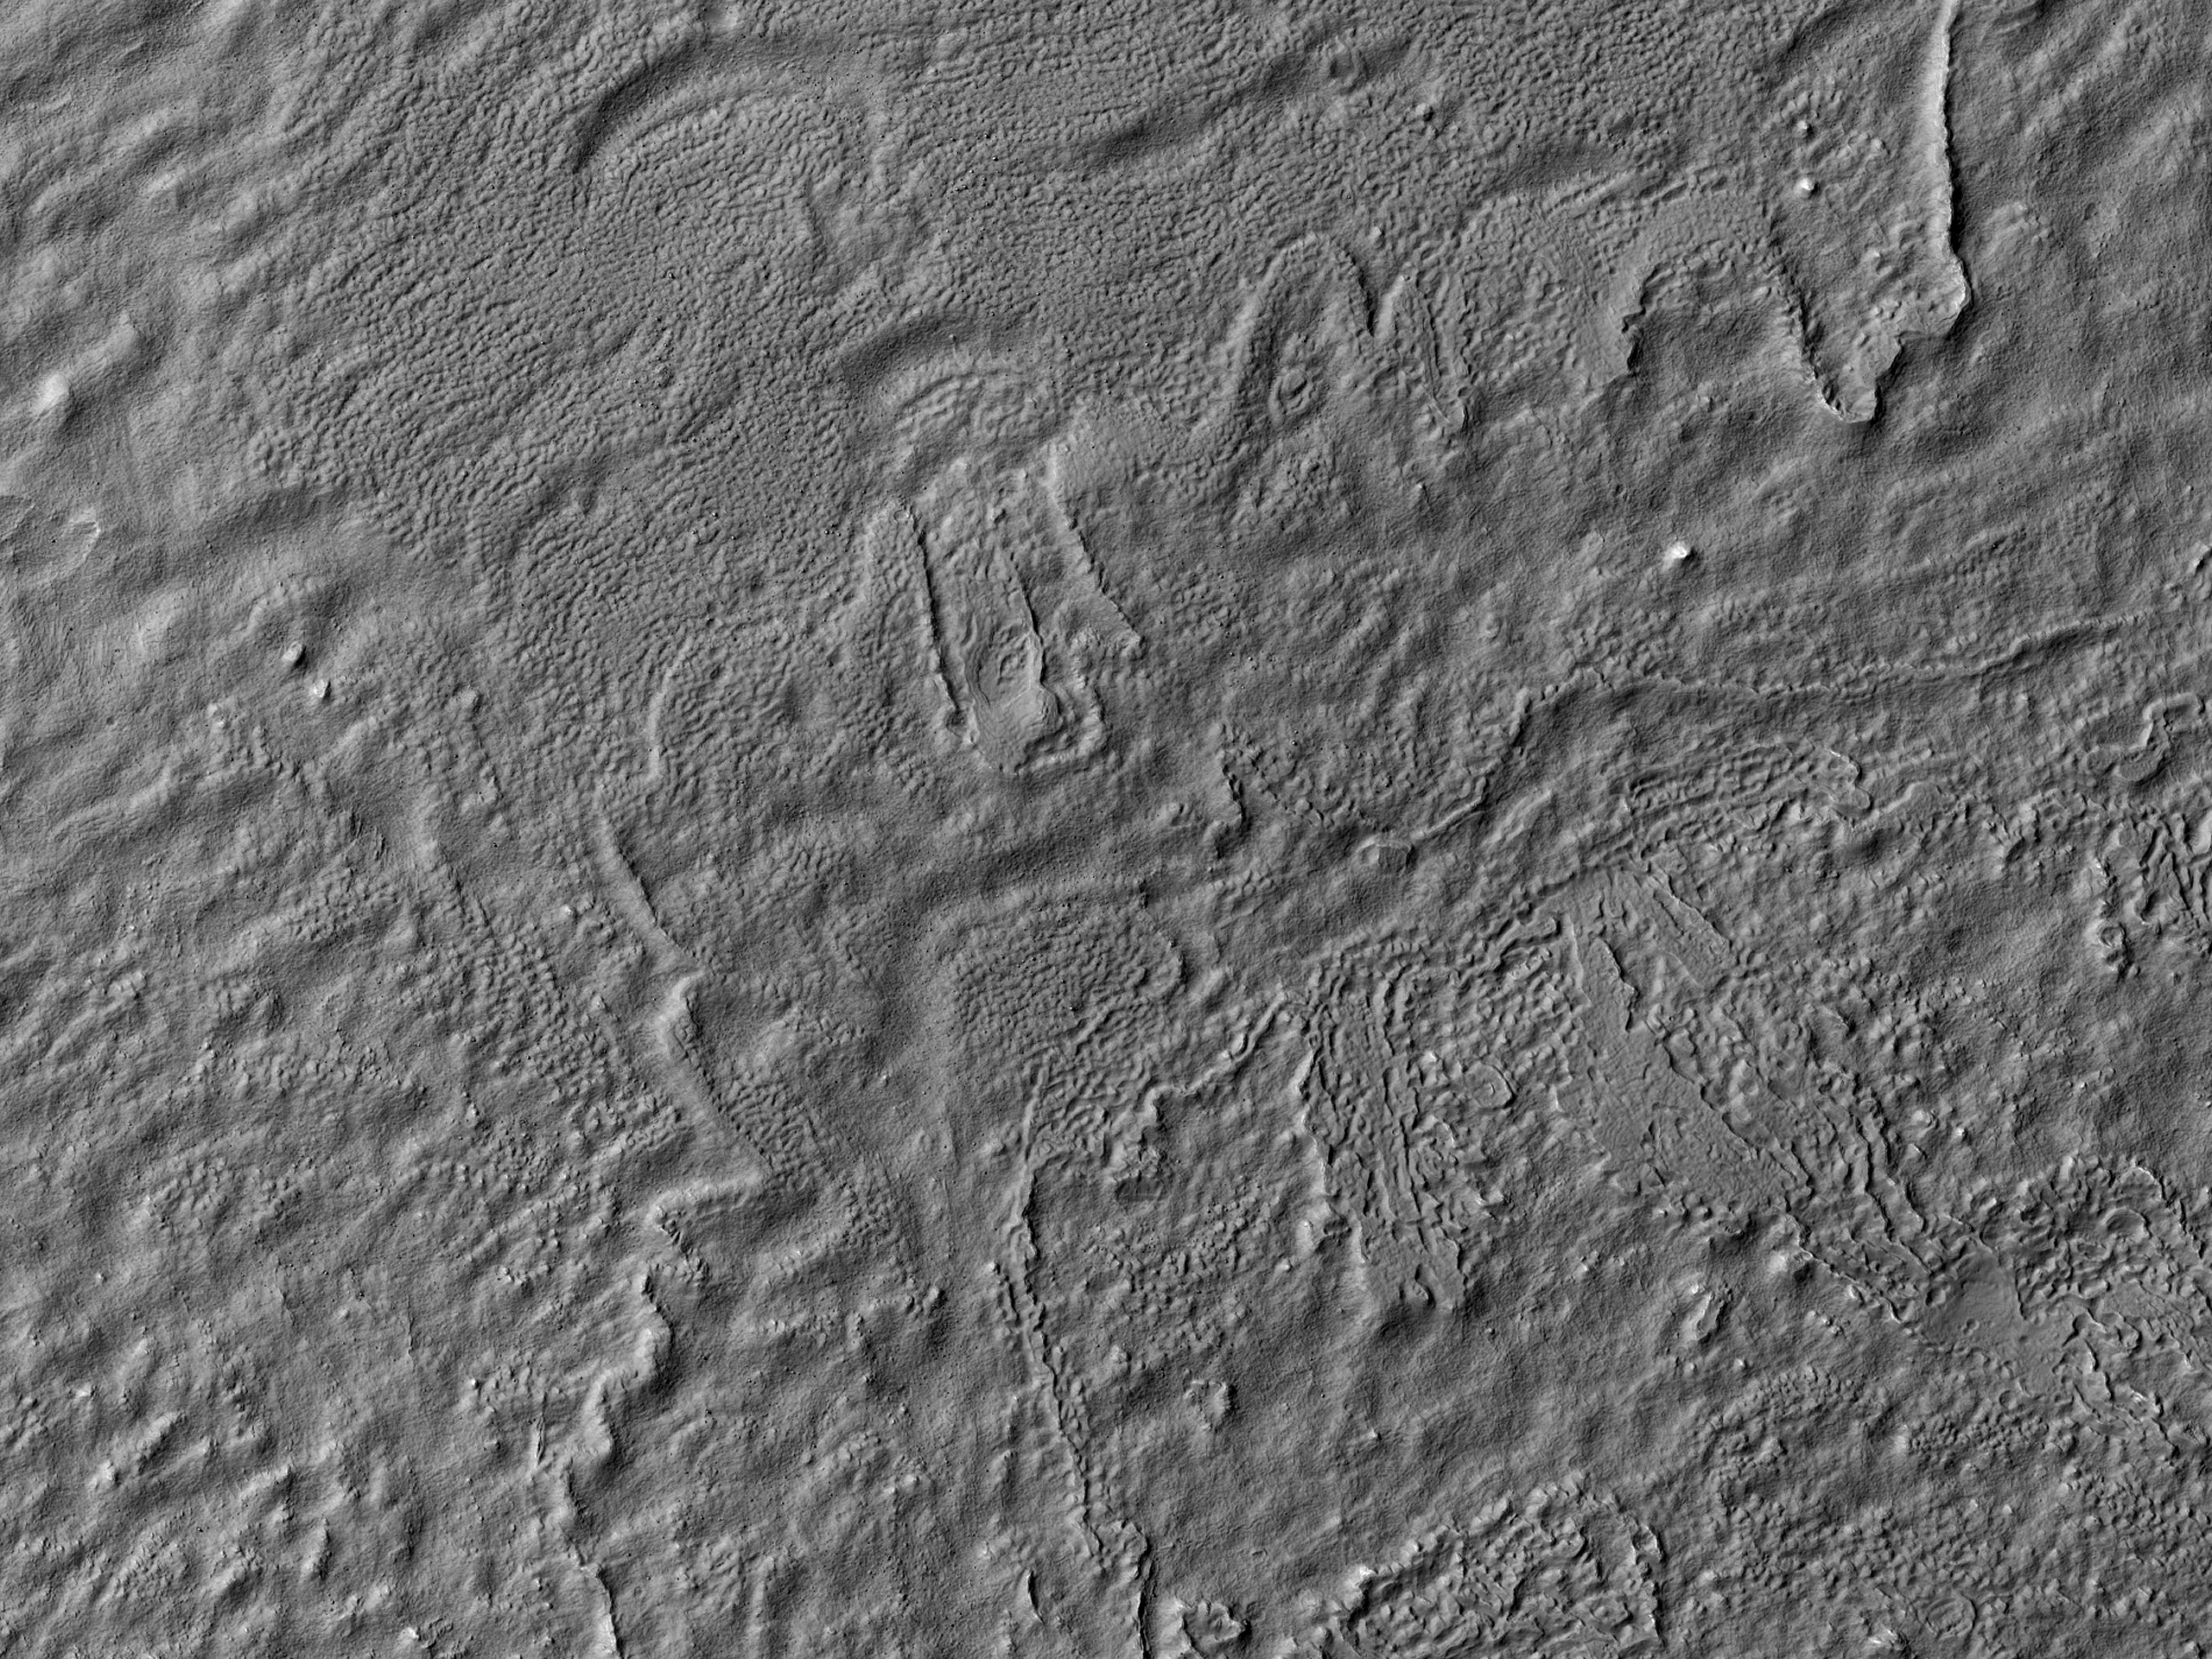 Landforms along Reull Vallis